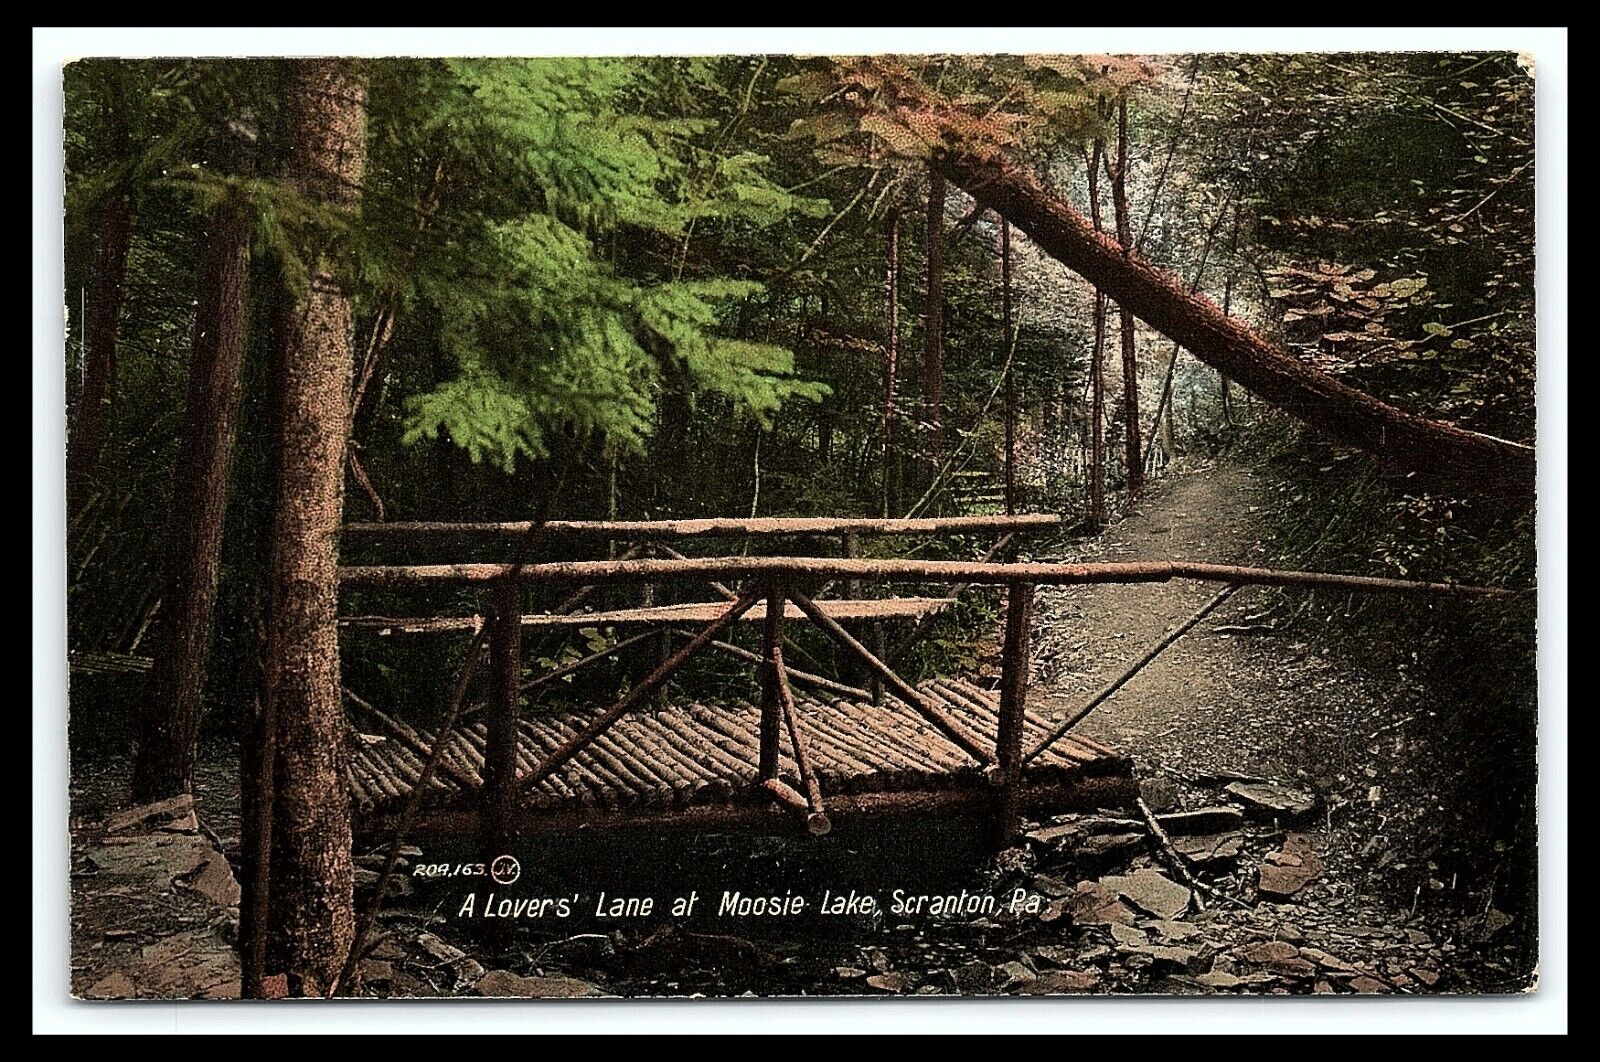 Scranton PA Moosic Lake At Lovers Lane Wooden Bridge Postcard       pc249